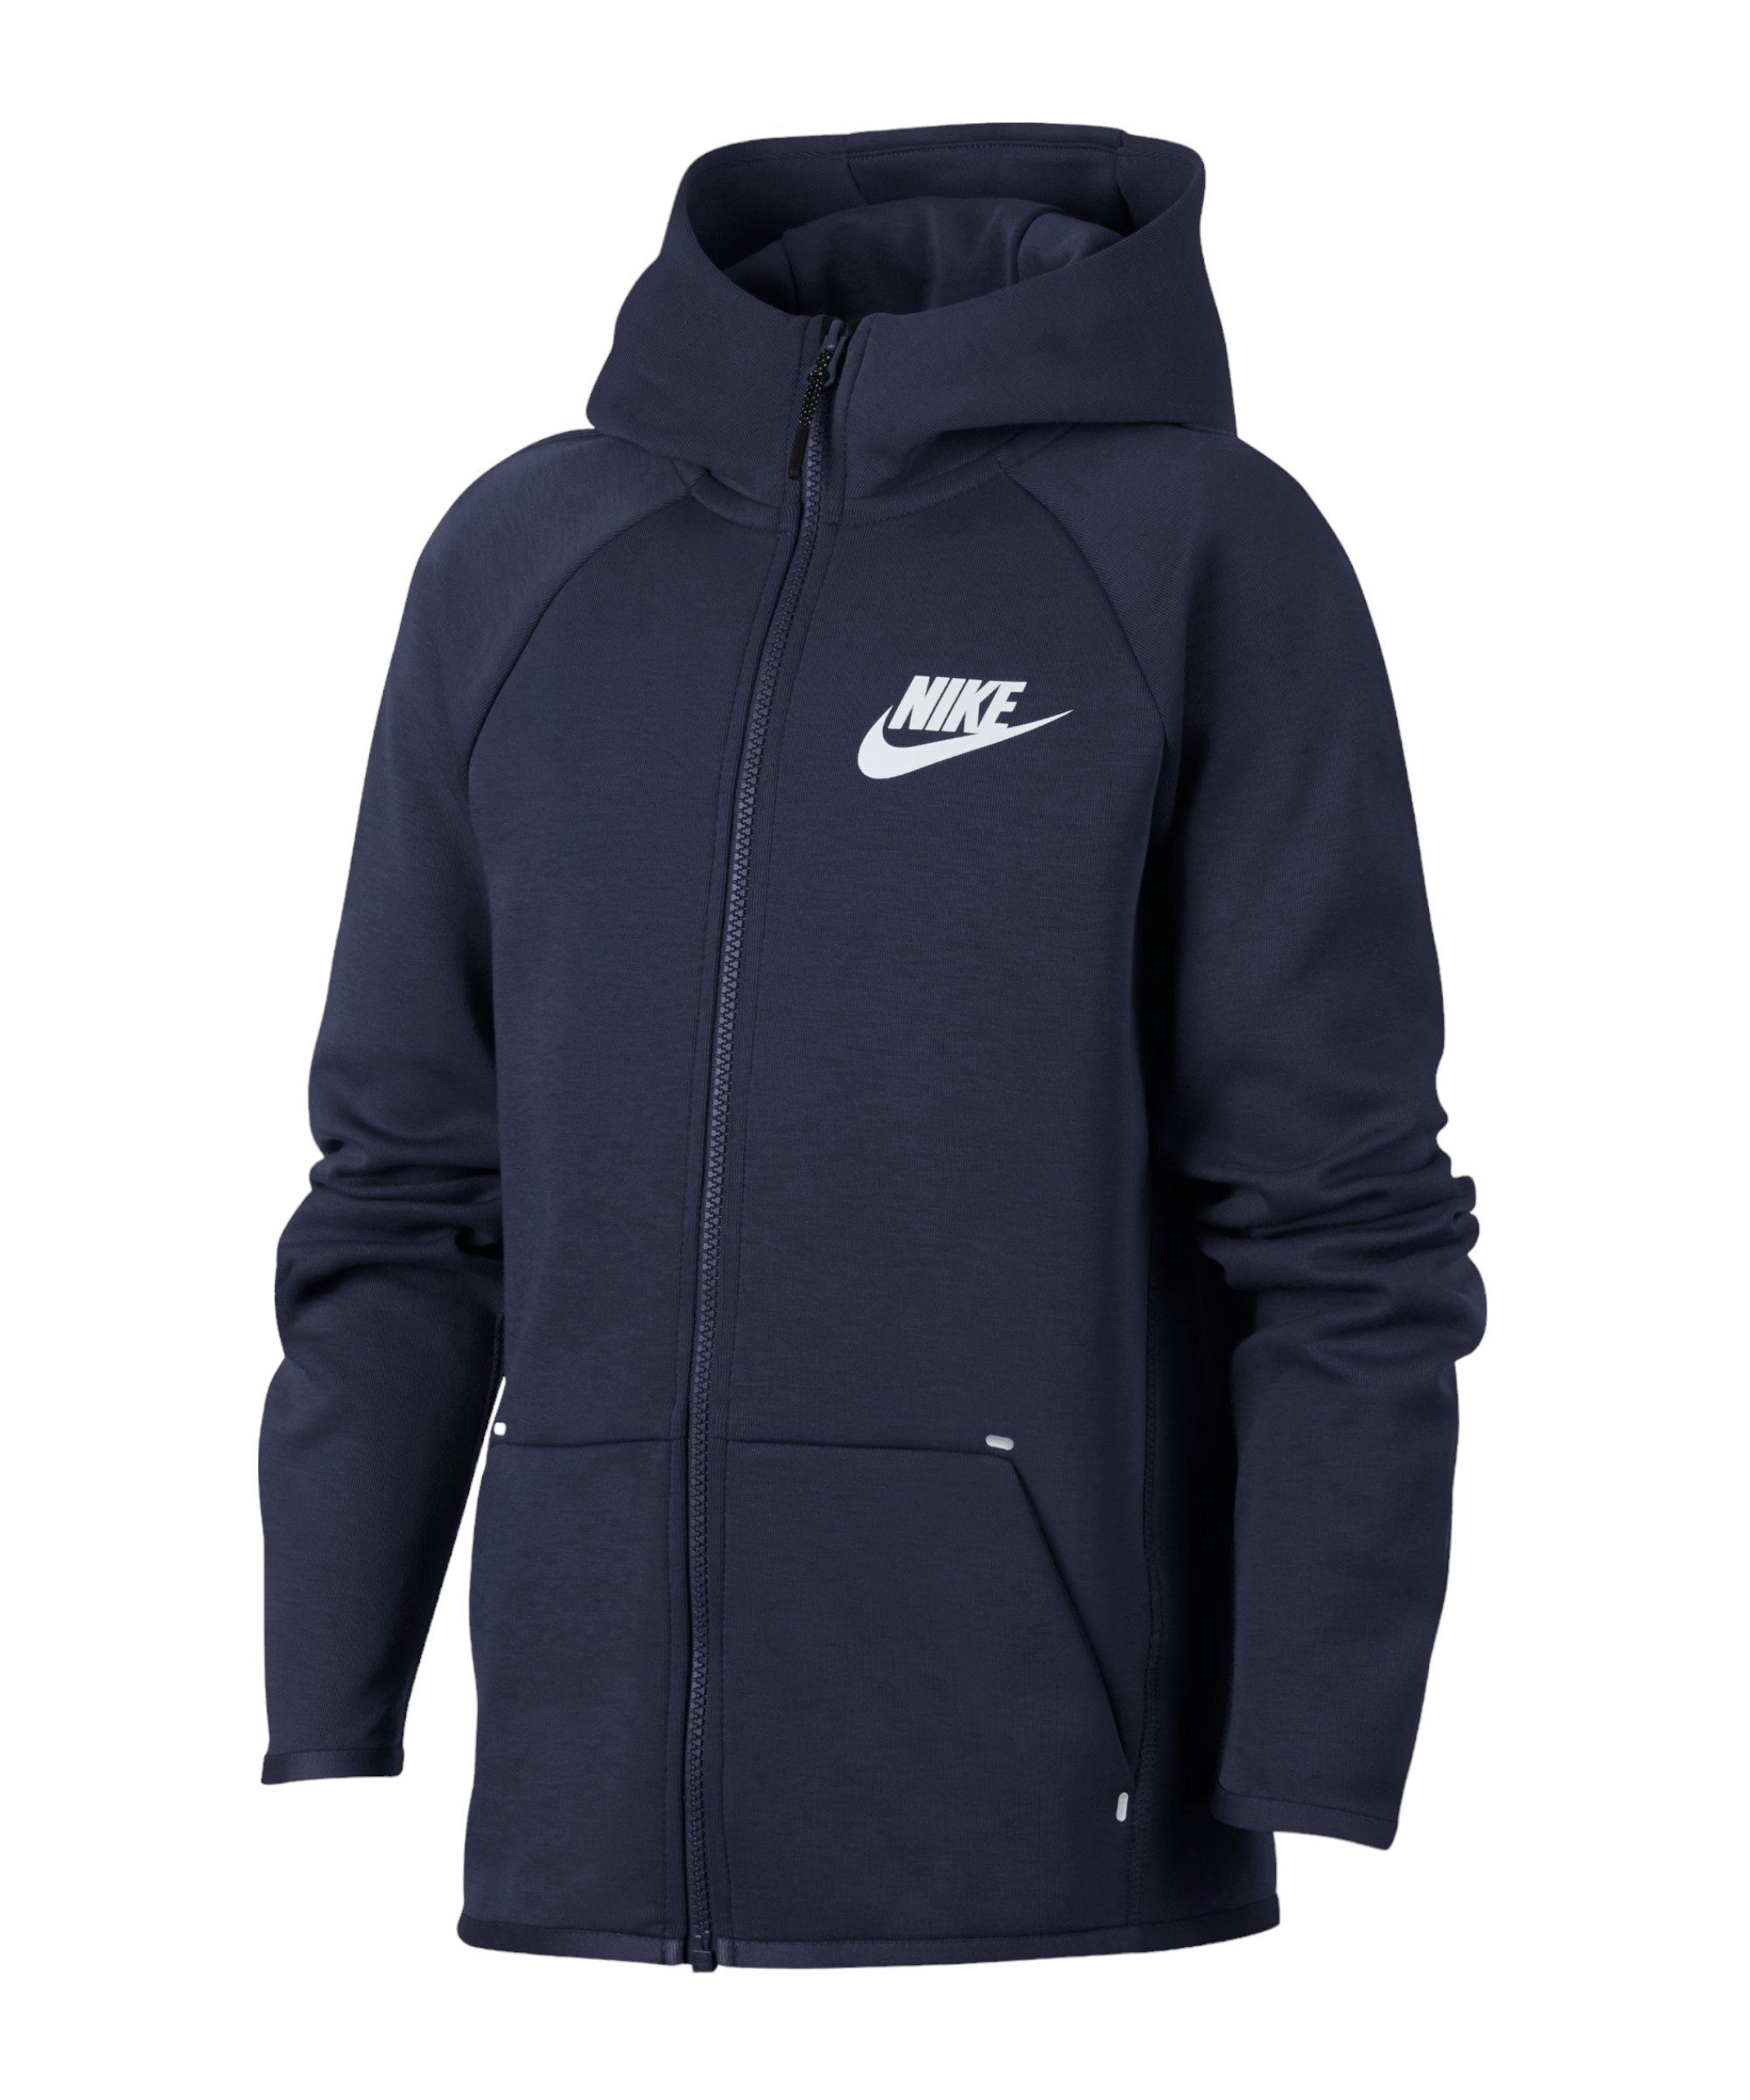 Nike Sportswear Sweatjacke Tech Fleece Kapuzenjacke Jacket Kids